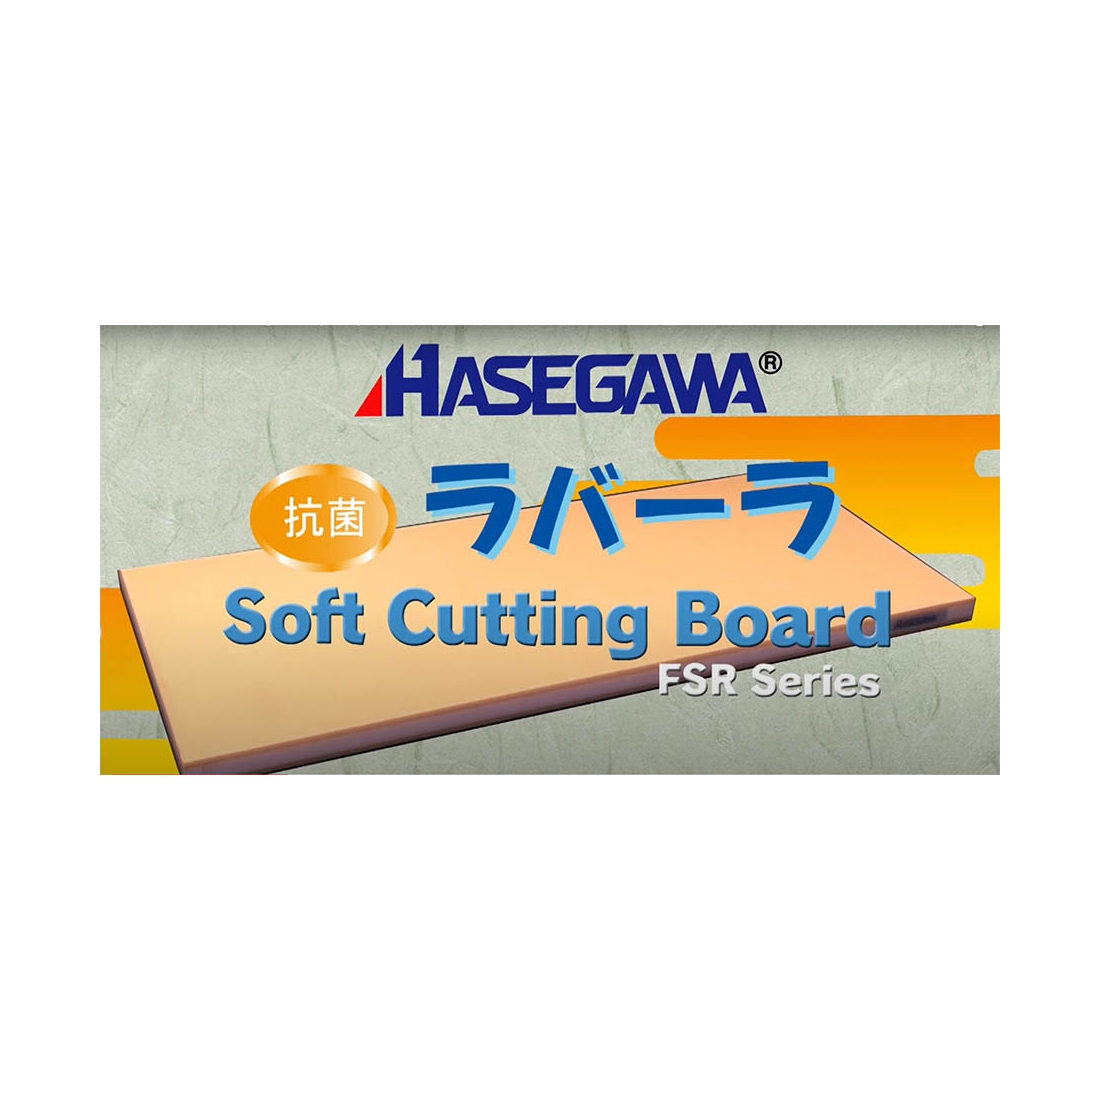 Hasegawa come scegliere, utilizzare e mantenere i taglieri giapponesi